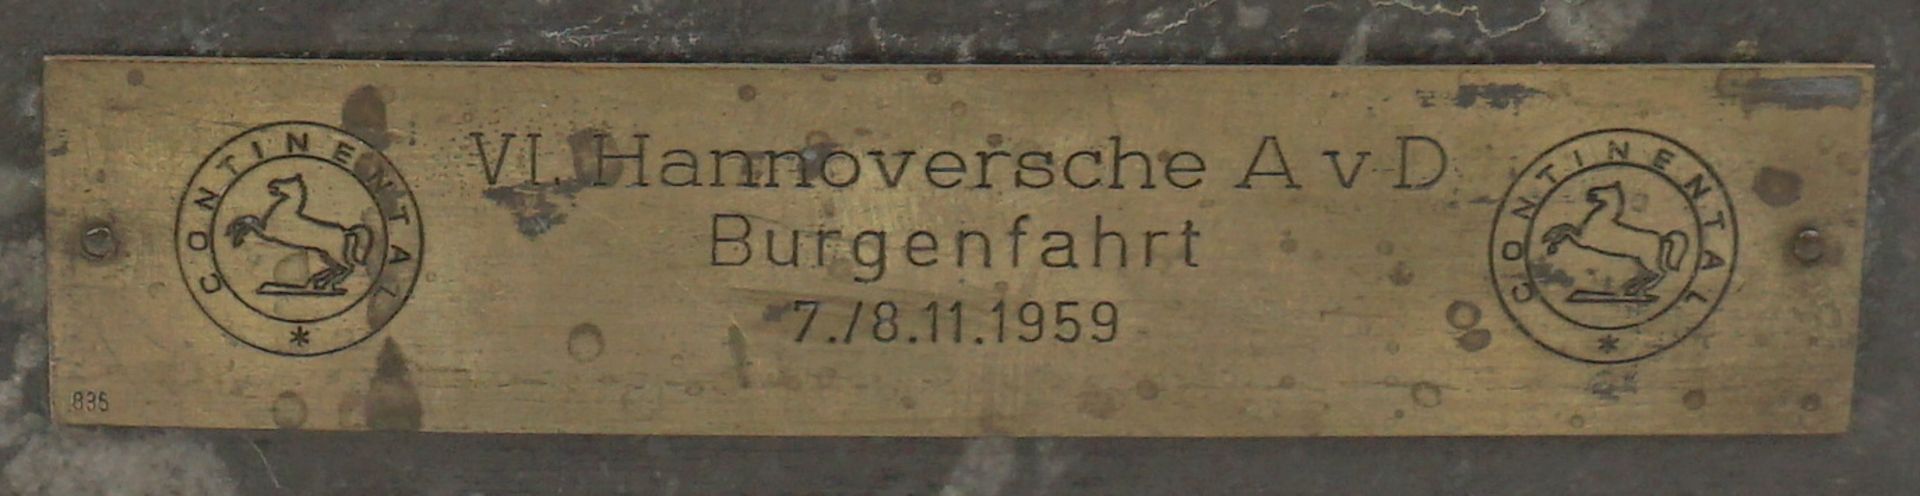 Hannoversche AvD Burgenfahrt 1959, Pferdeplastik - Bild 2 aus 3